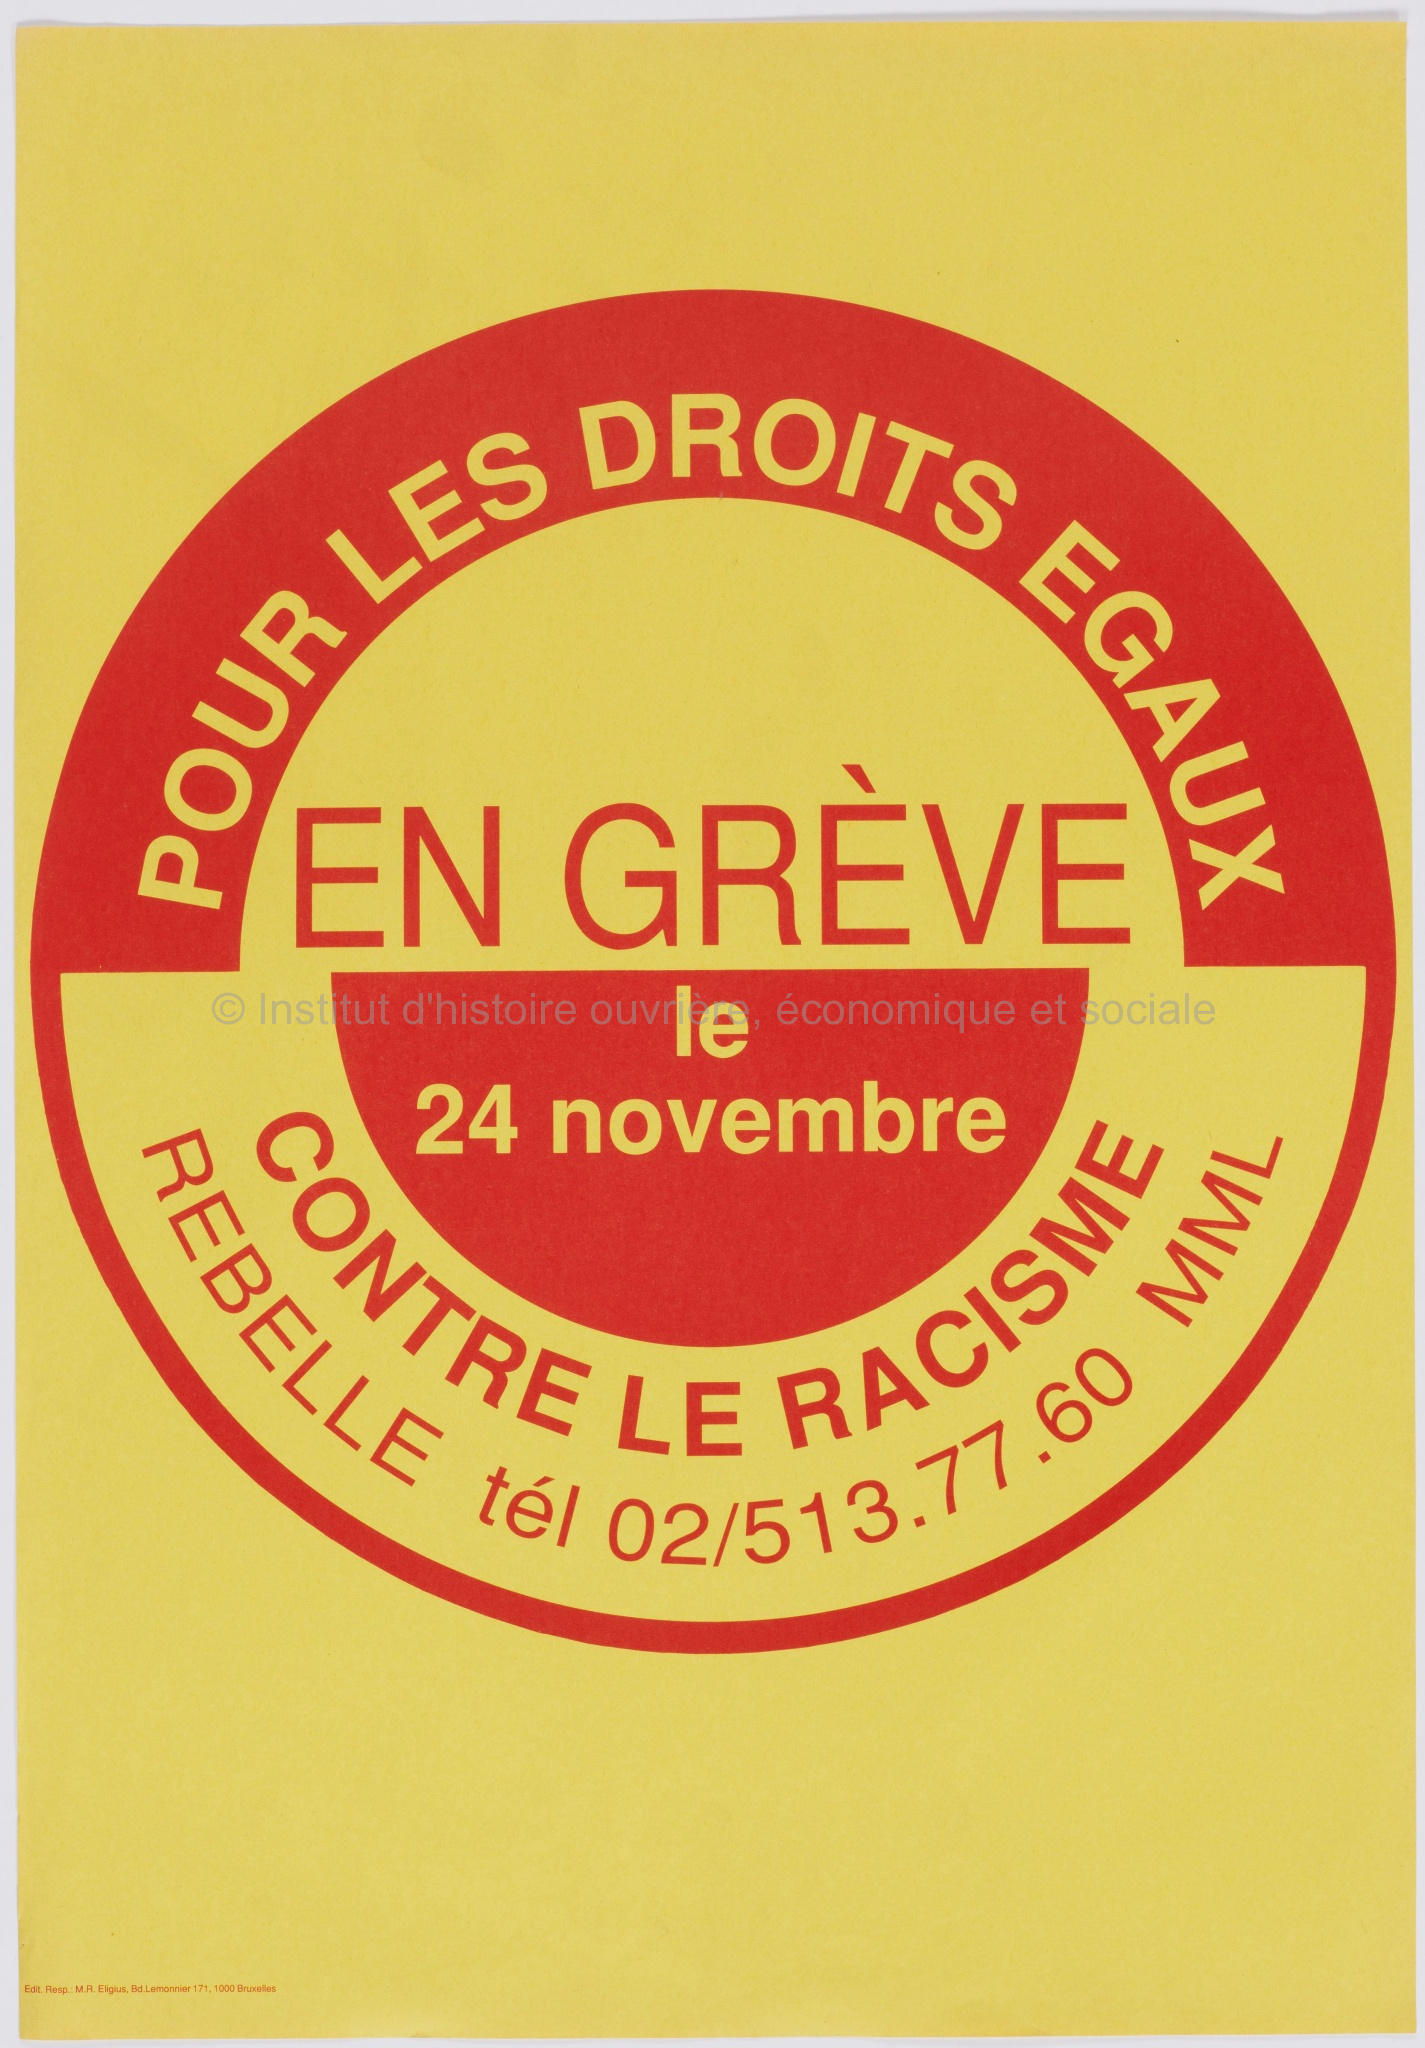 En grève le 24 novembre : pour les droits égaux, contre le racisme